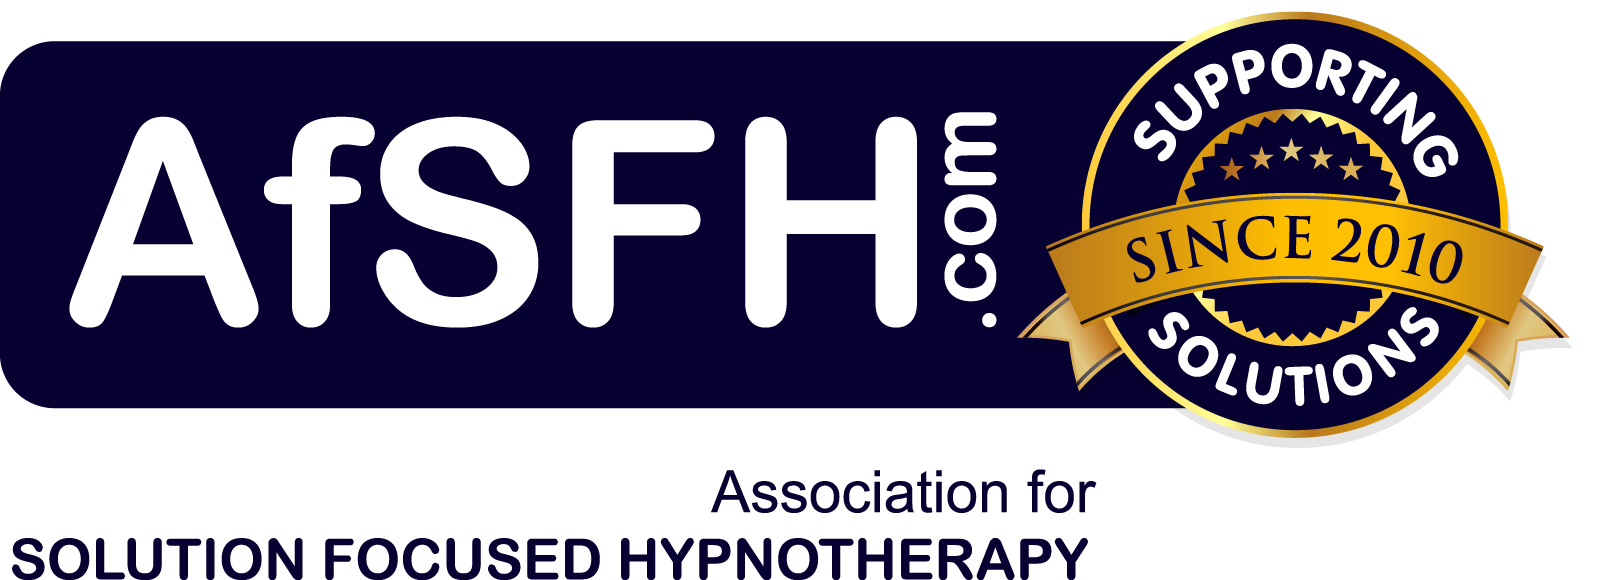 AfSFH_since_2010_logo